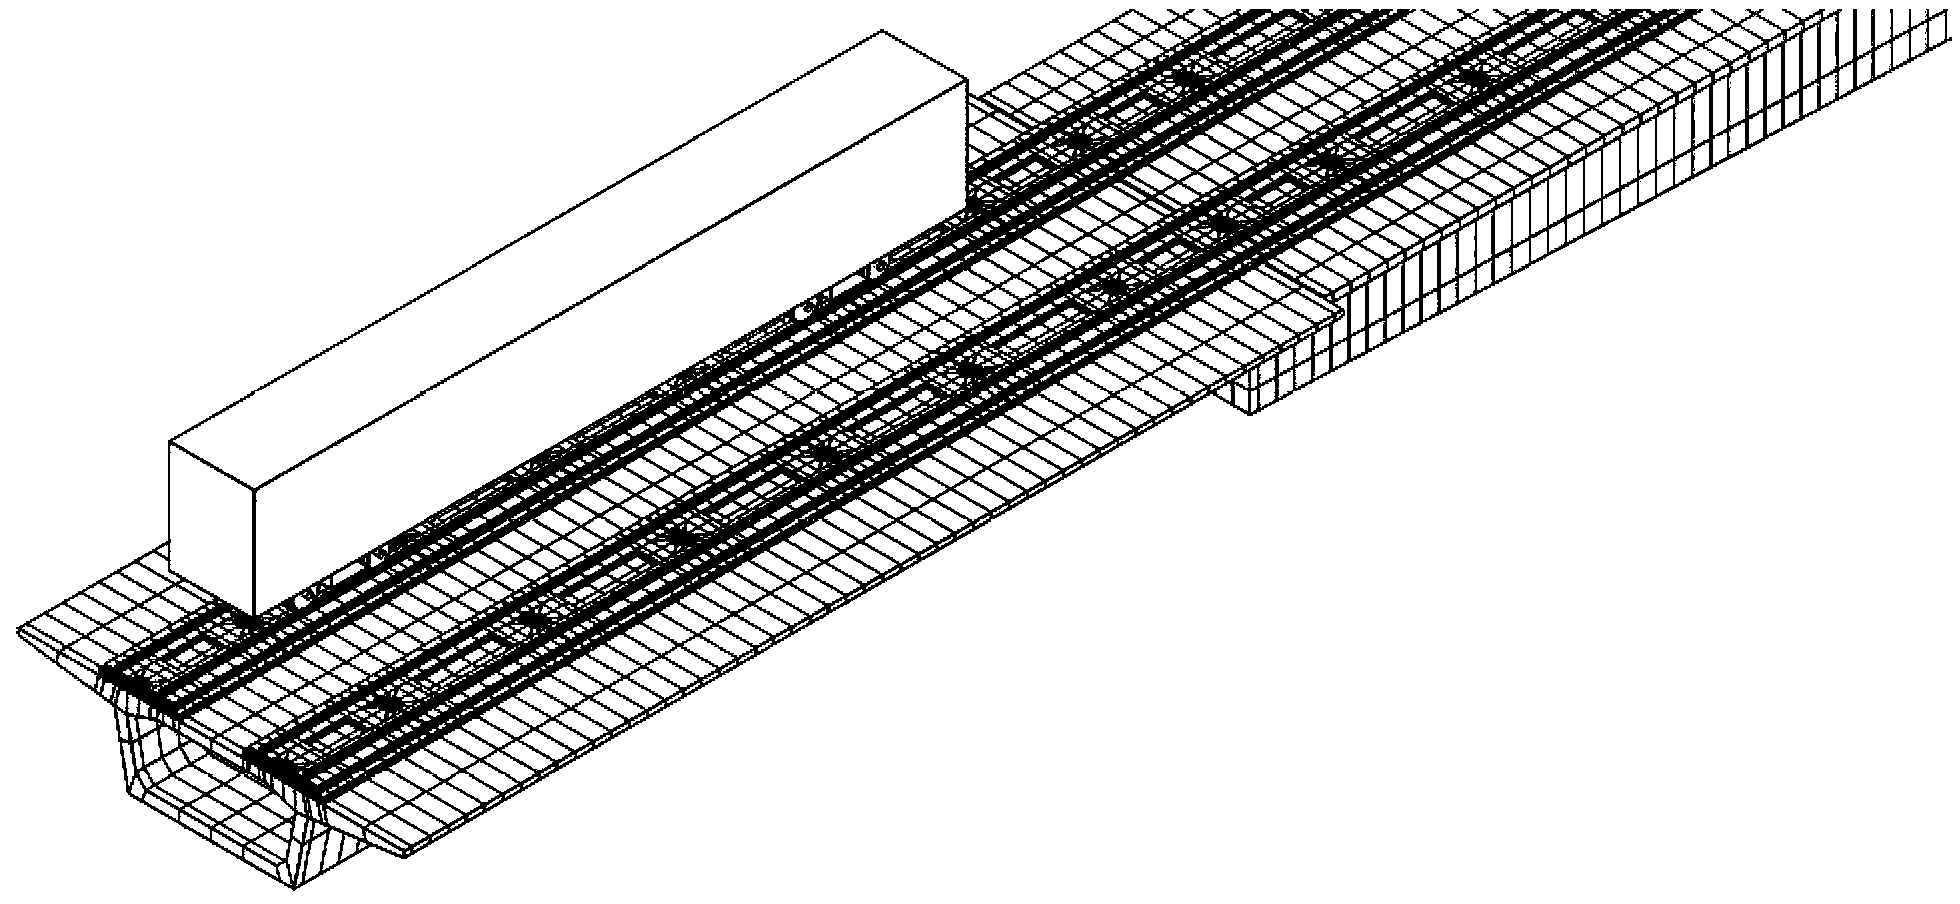 高速铁路长大桥梁单元式无砟轨道无缝线路设计方法